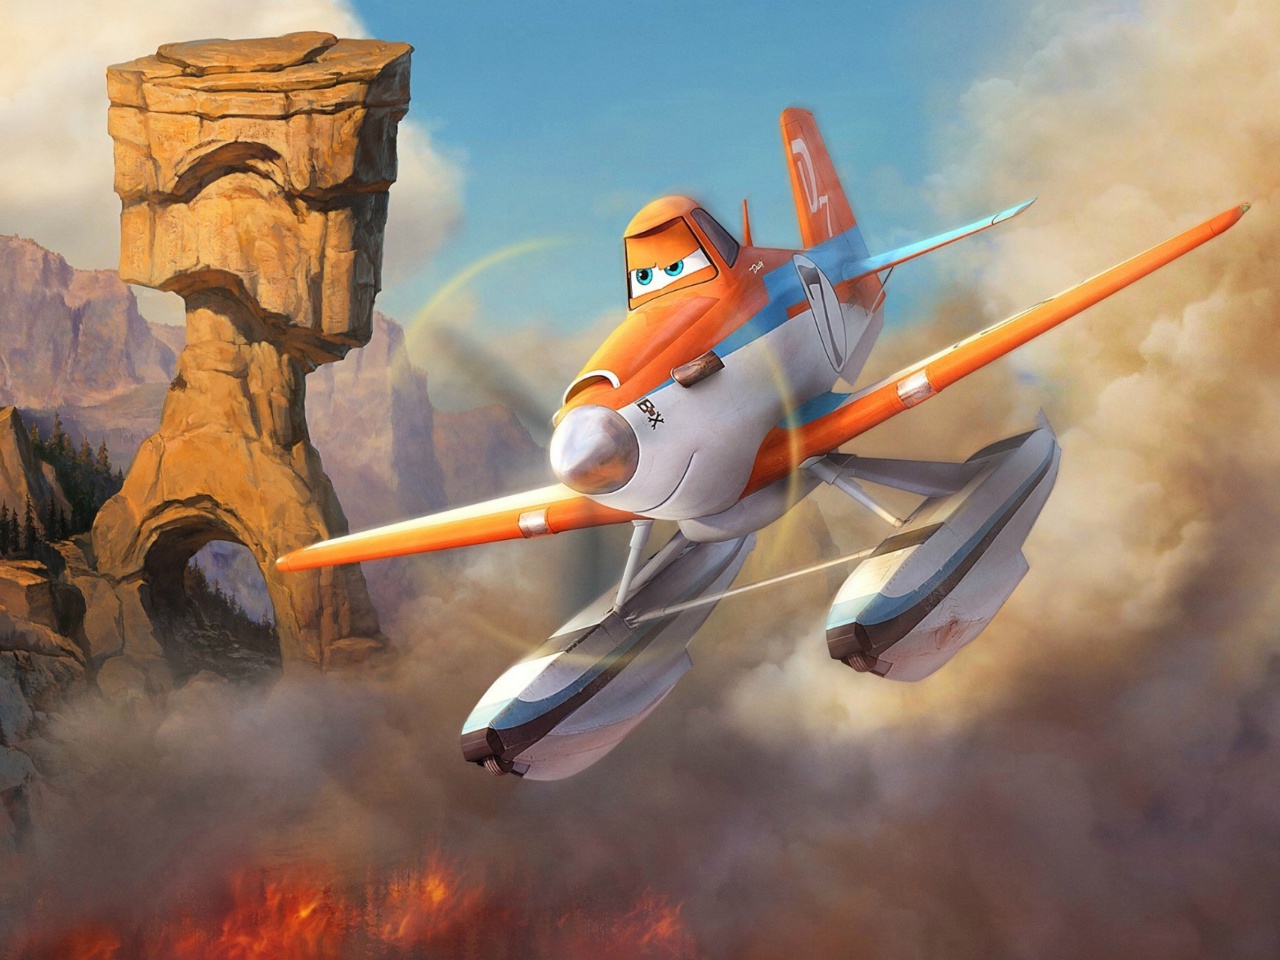 Das Planes Fire and Rescue 2014 Wallpaper 1280x960